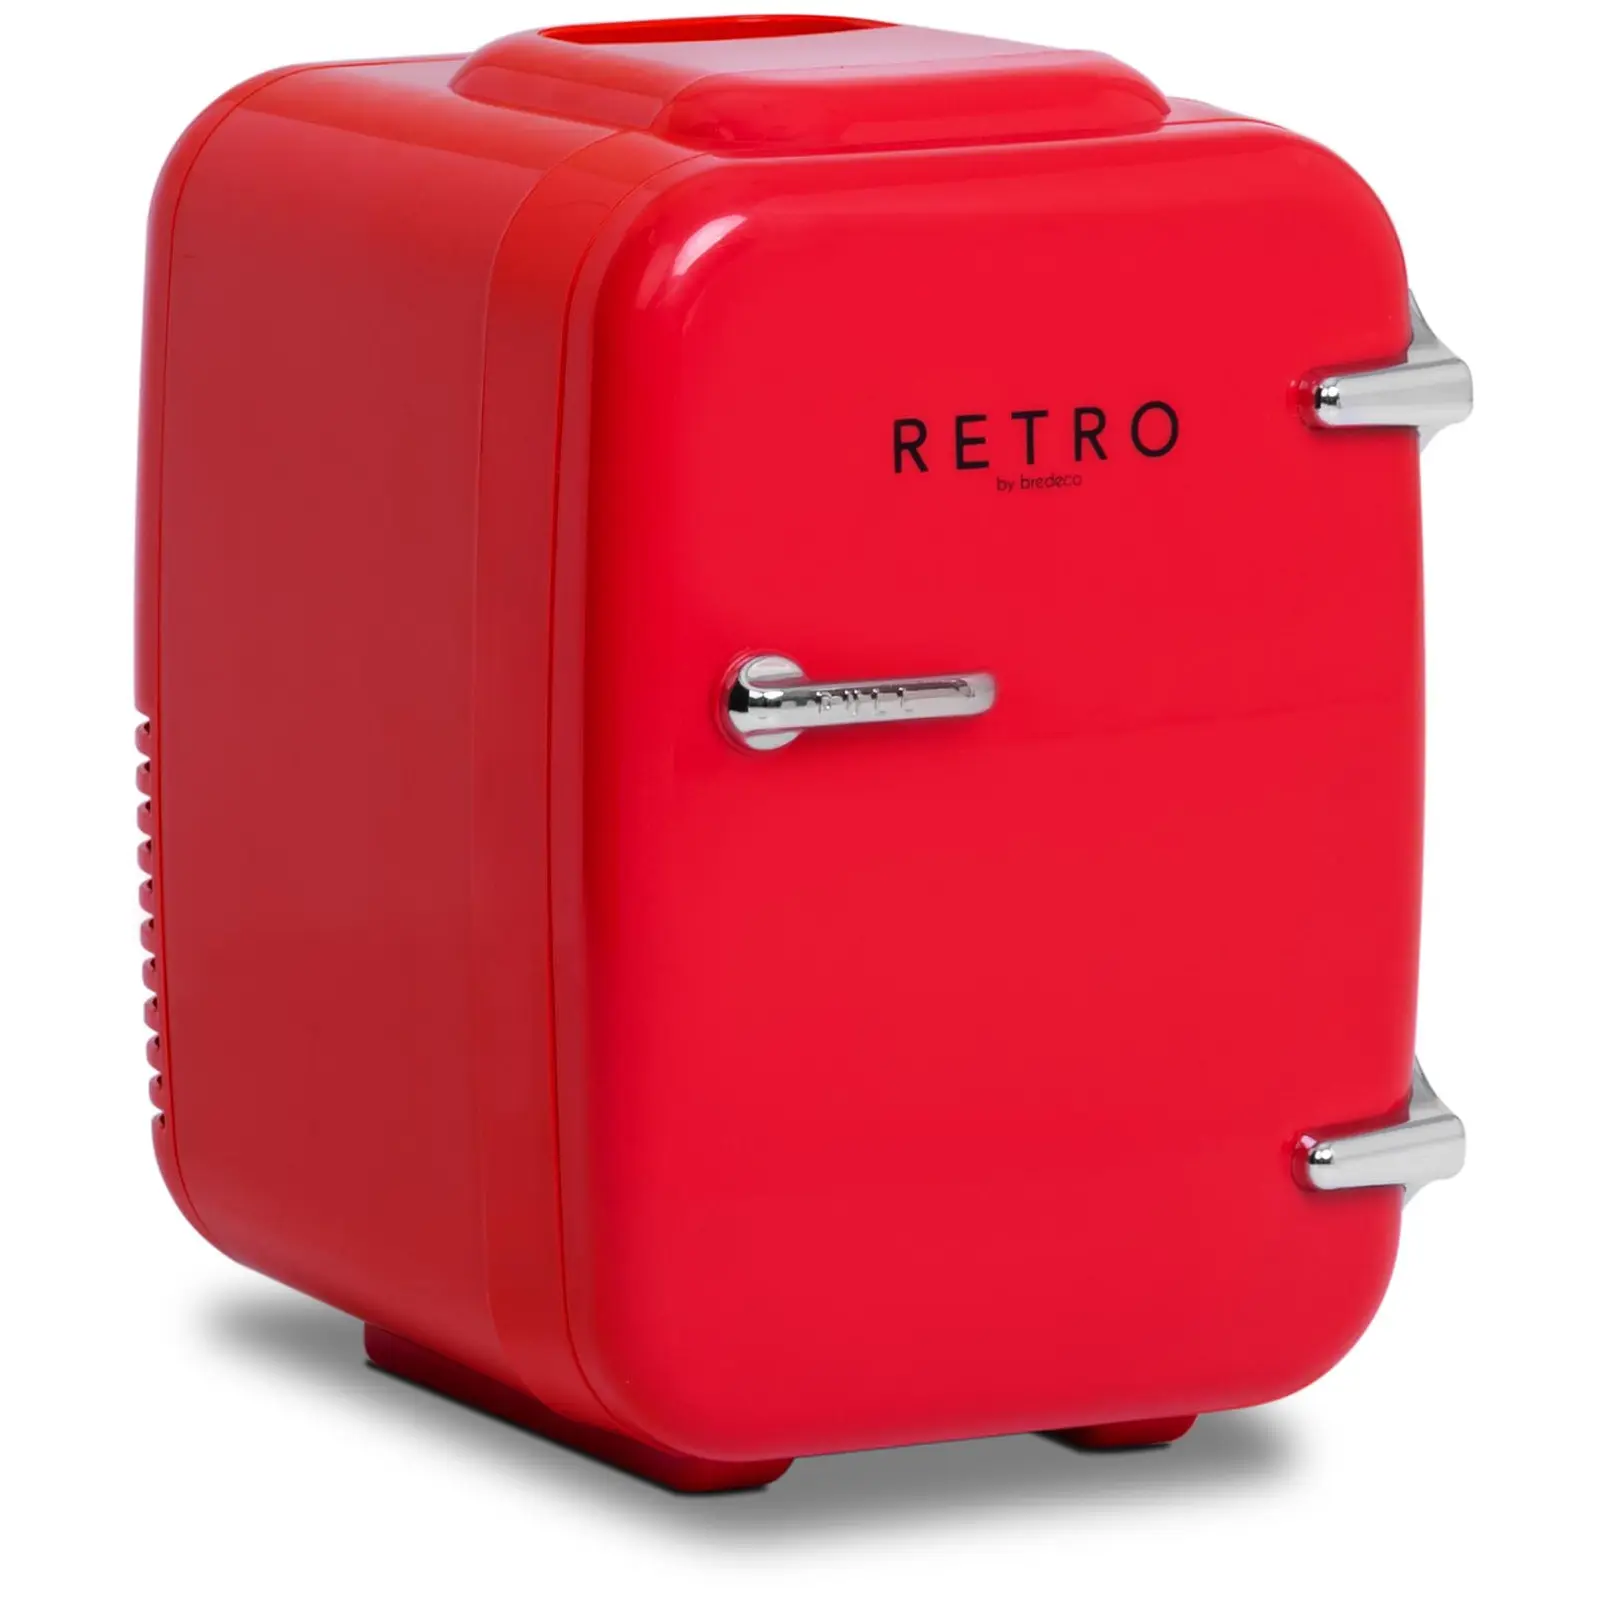 Mini Refrigerator - 4 L - red